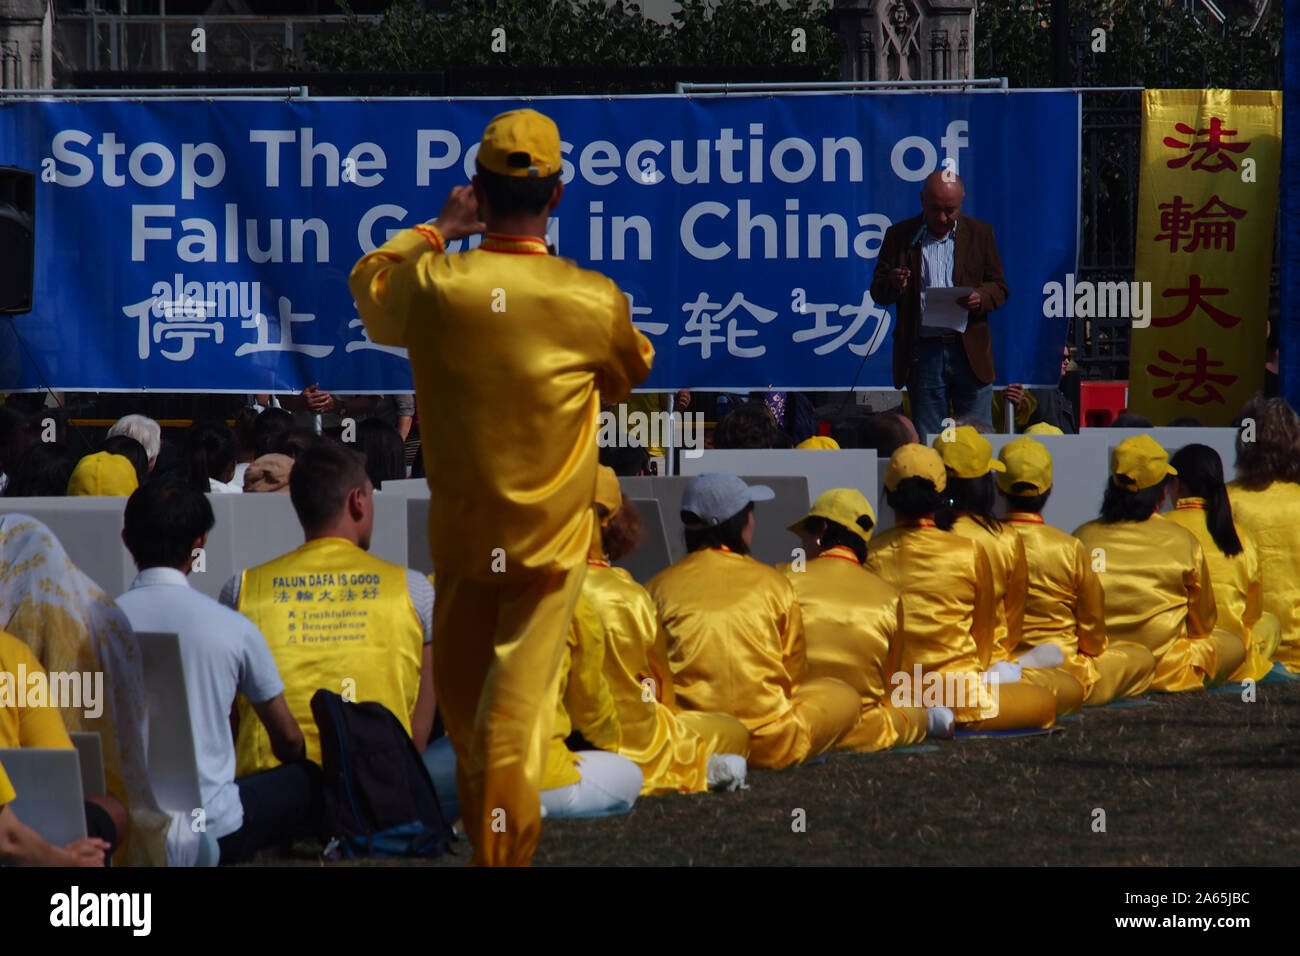 Un grand groupe de Chinois tenant une protestation pacifique à propos de la persécution de la secte Falon Gong la protestation est en place du Parlement, Londres Banque D'Images